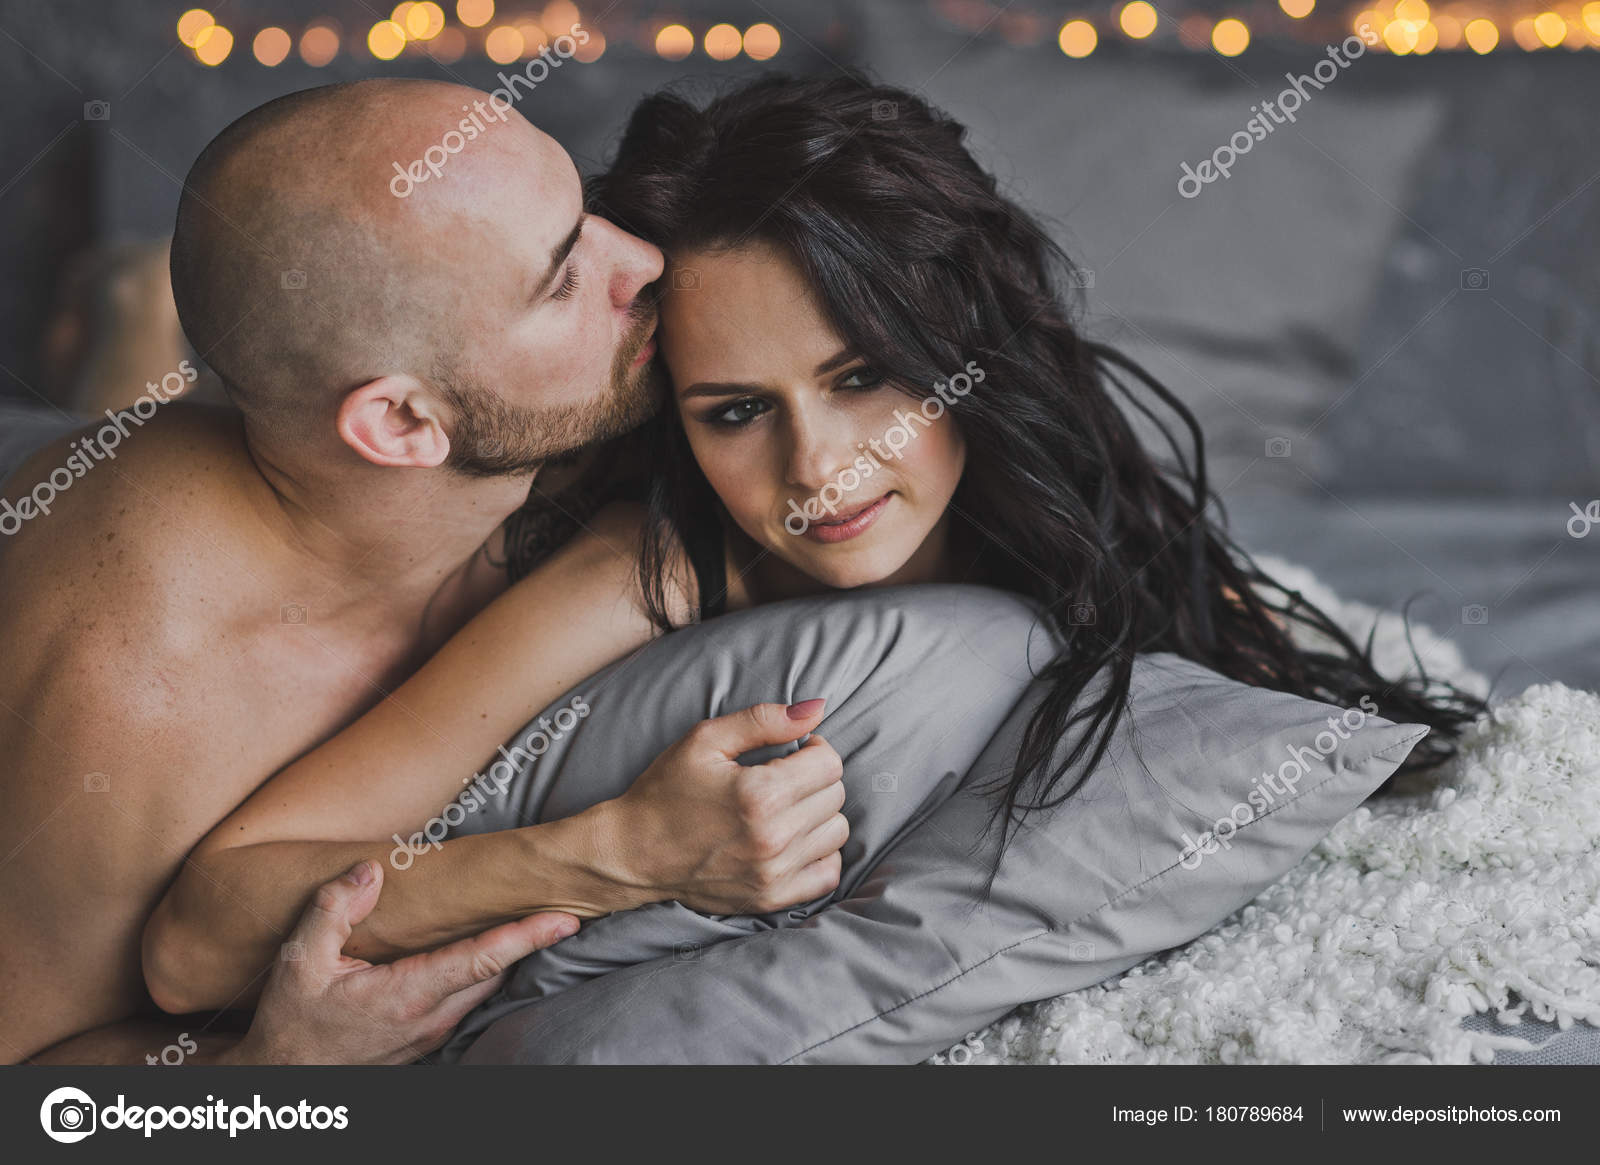 Парень целует ноги сексуальной брюнетки и трахает ее на диване порно фото